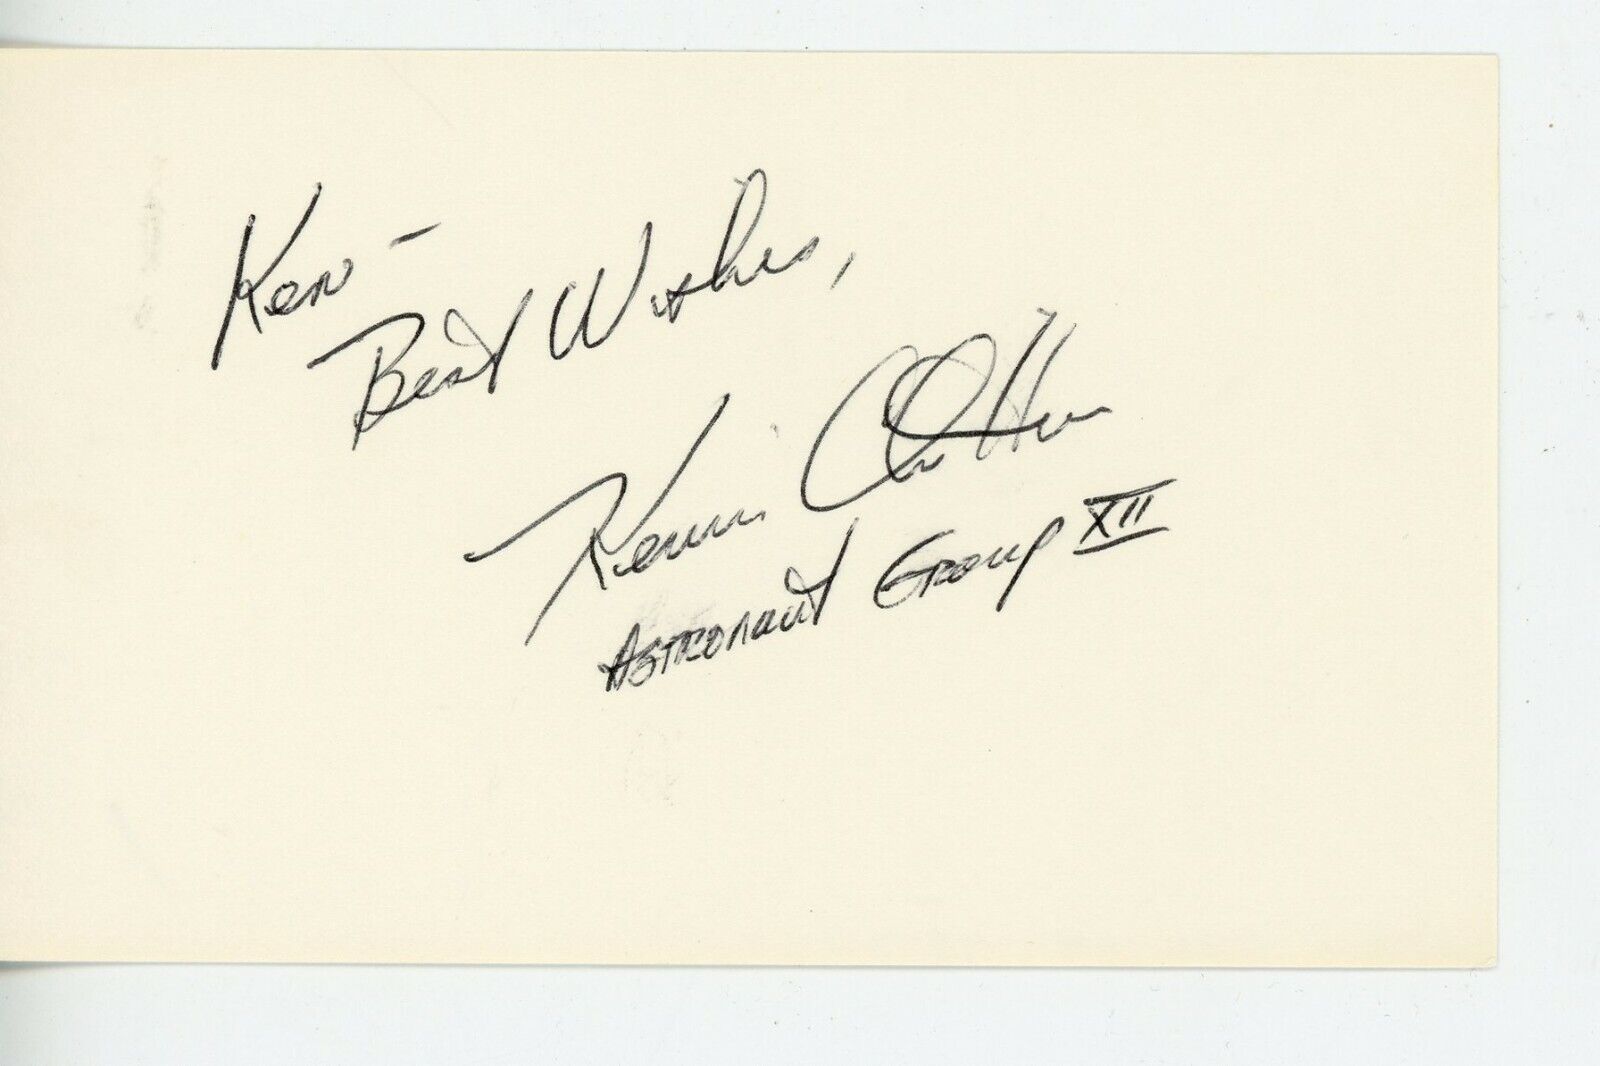 Space Shuttles - Endeavor & Atlantis -  Astronaut Kevin Chilton & his autograph